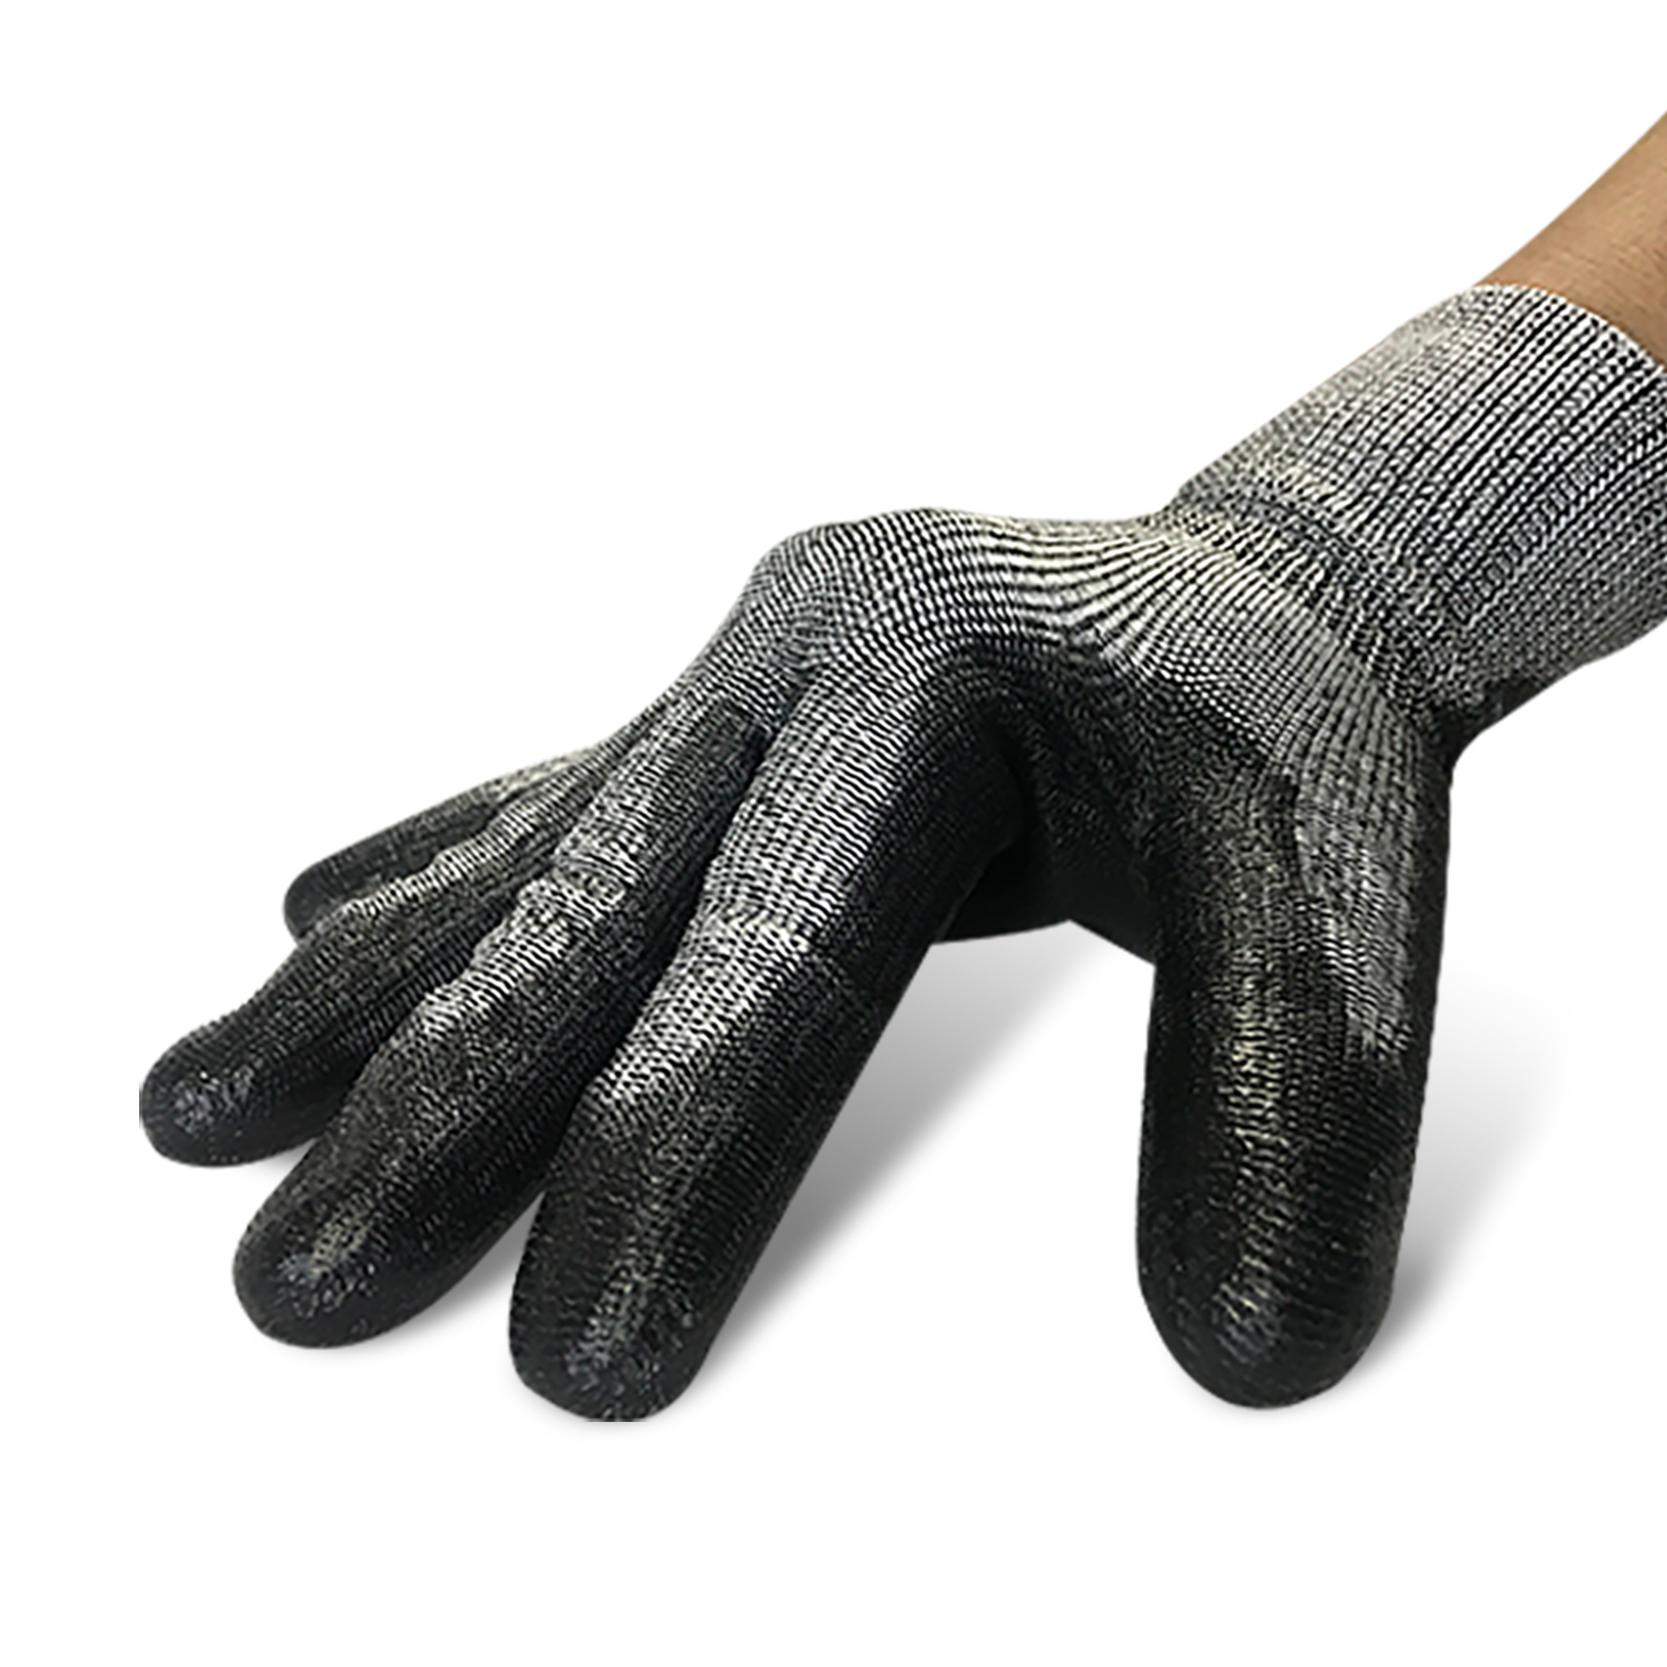 Гарячі продажі 13G Hppe+скловолокно+сталева оболонка, нітрилові рукавички з піщаним покриттям. Представлене зображення